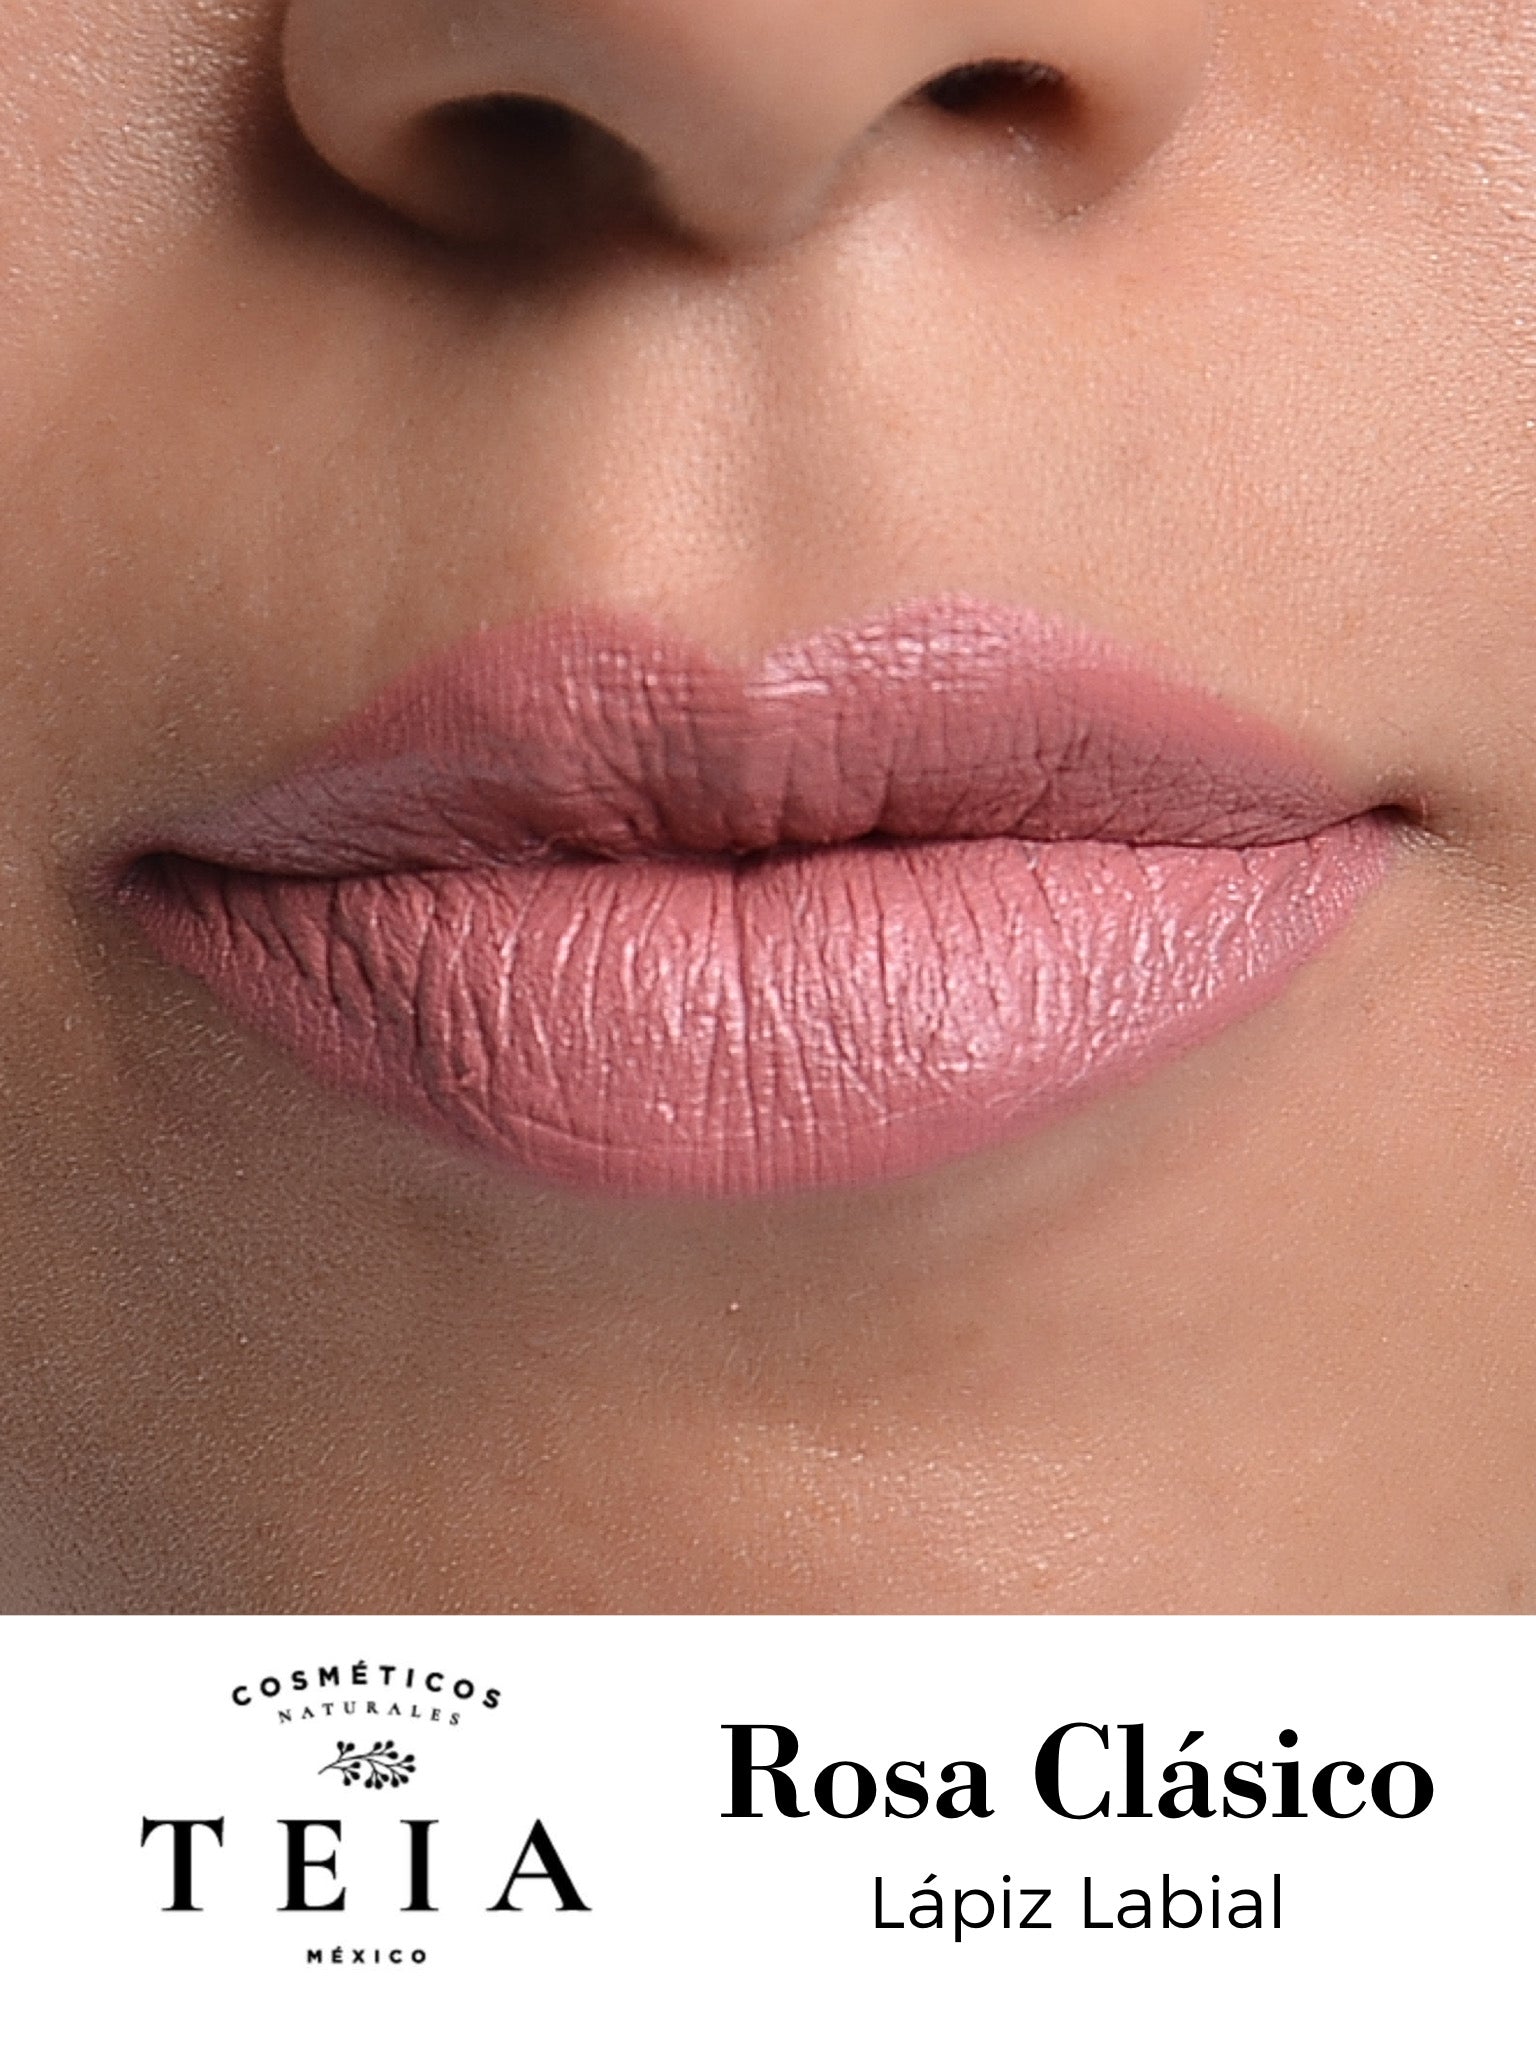 Rosa Clásico - Labial Natural